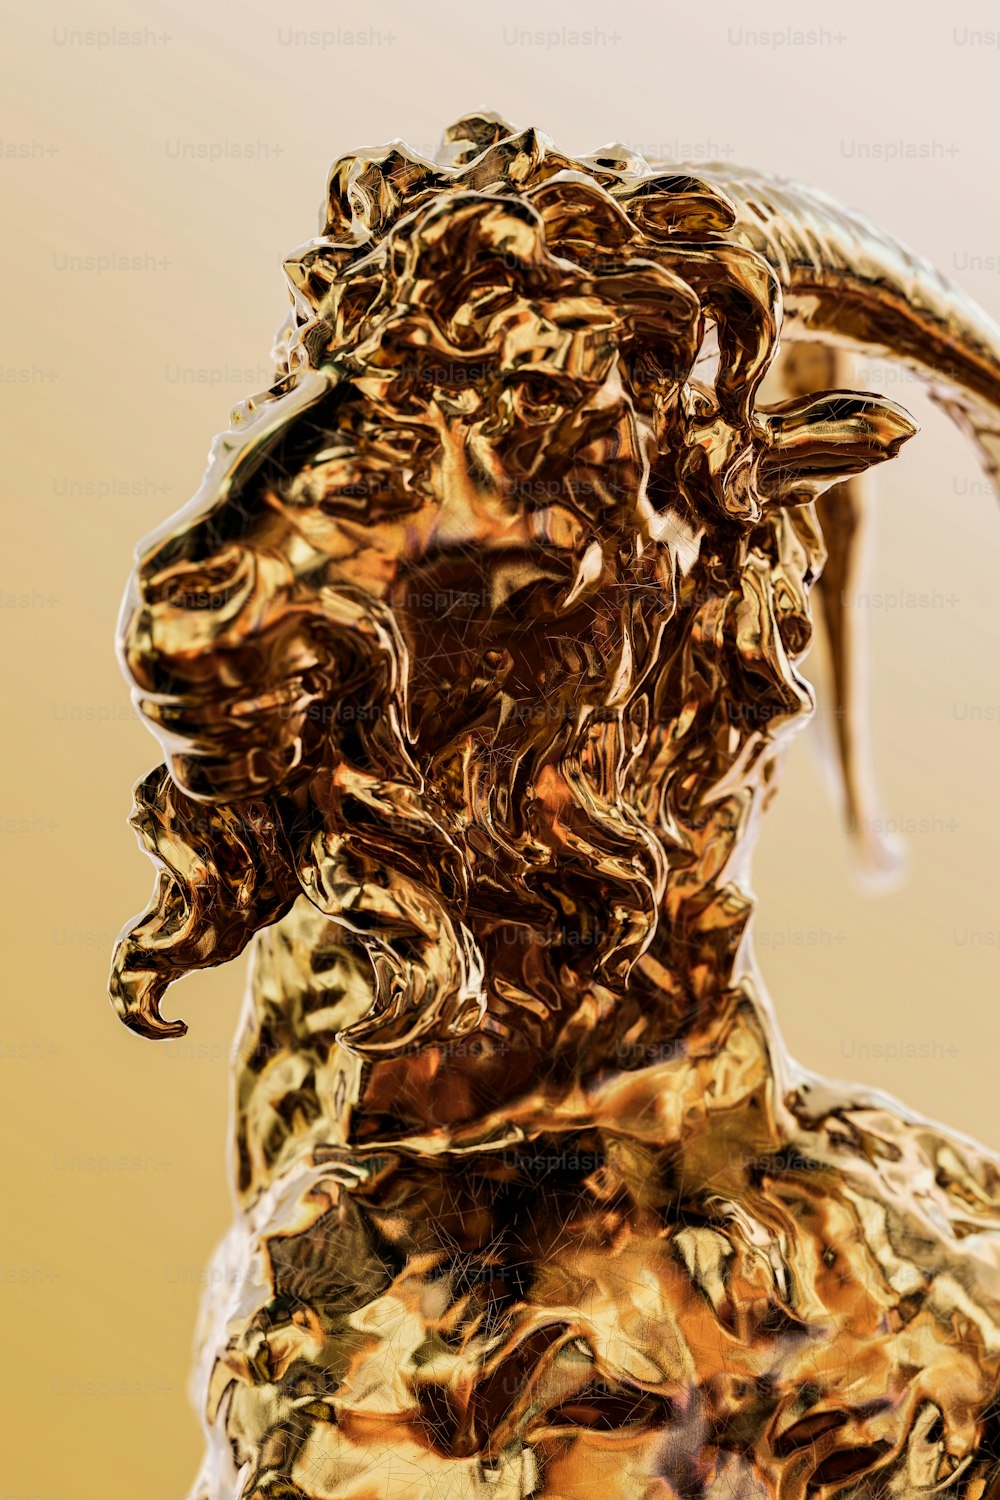 Une statue dorée d’une chèvre avec de longues cornes